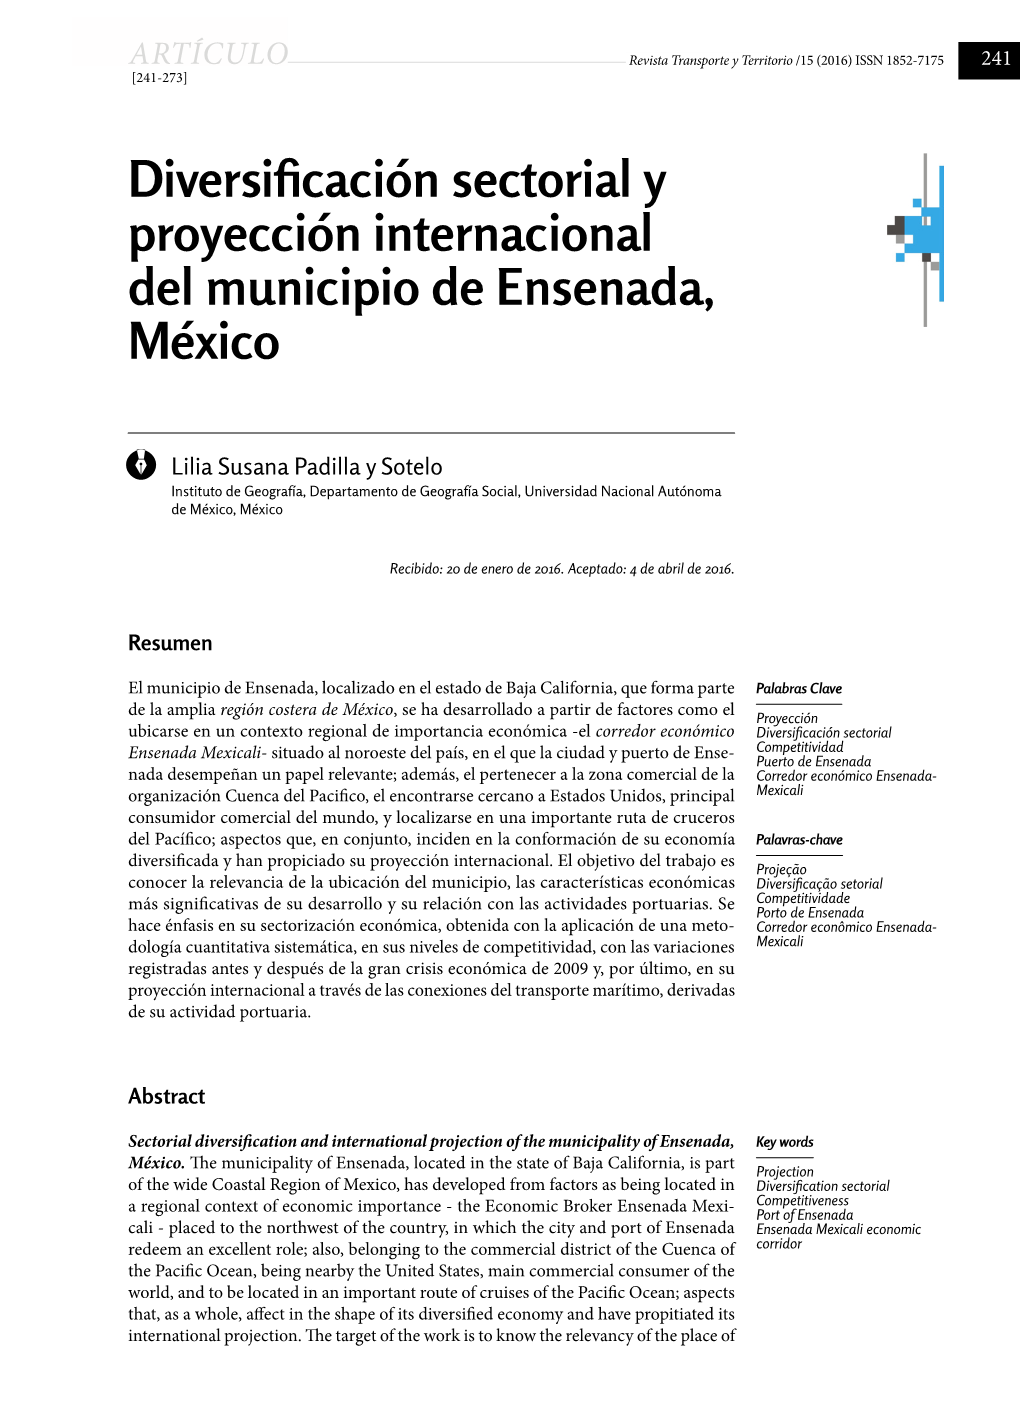 Diversificación Sectorial Y Proyección Internacional Del Municipio De Ensenada, México